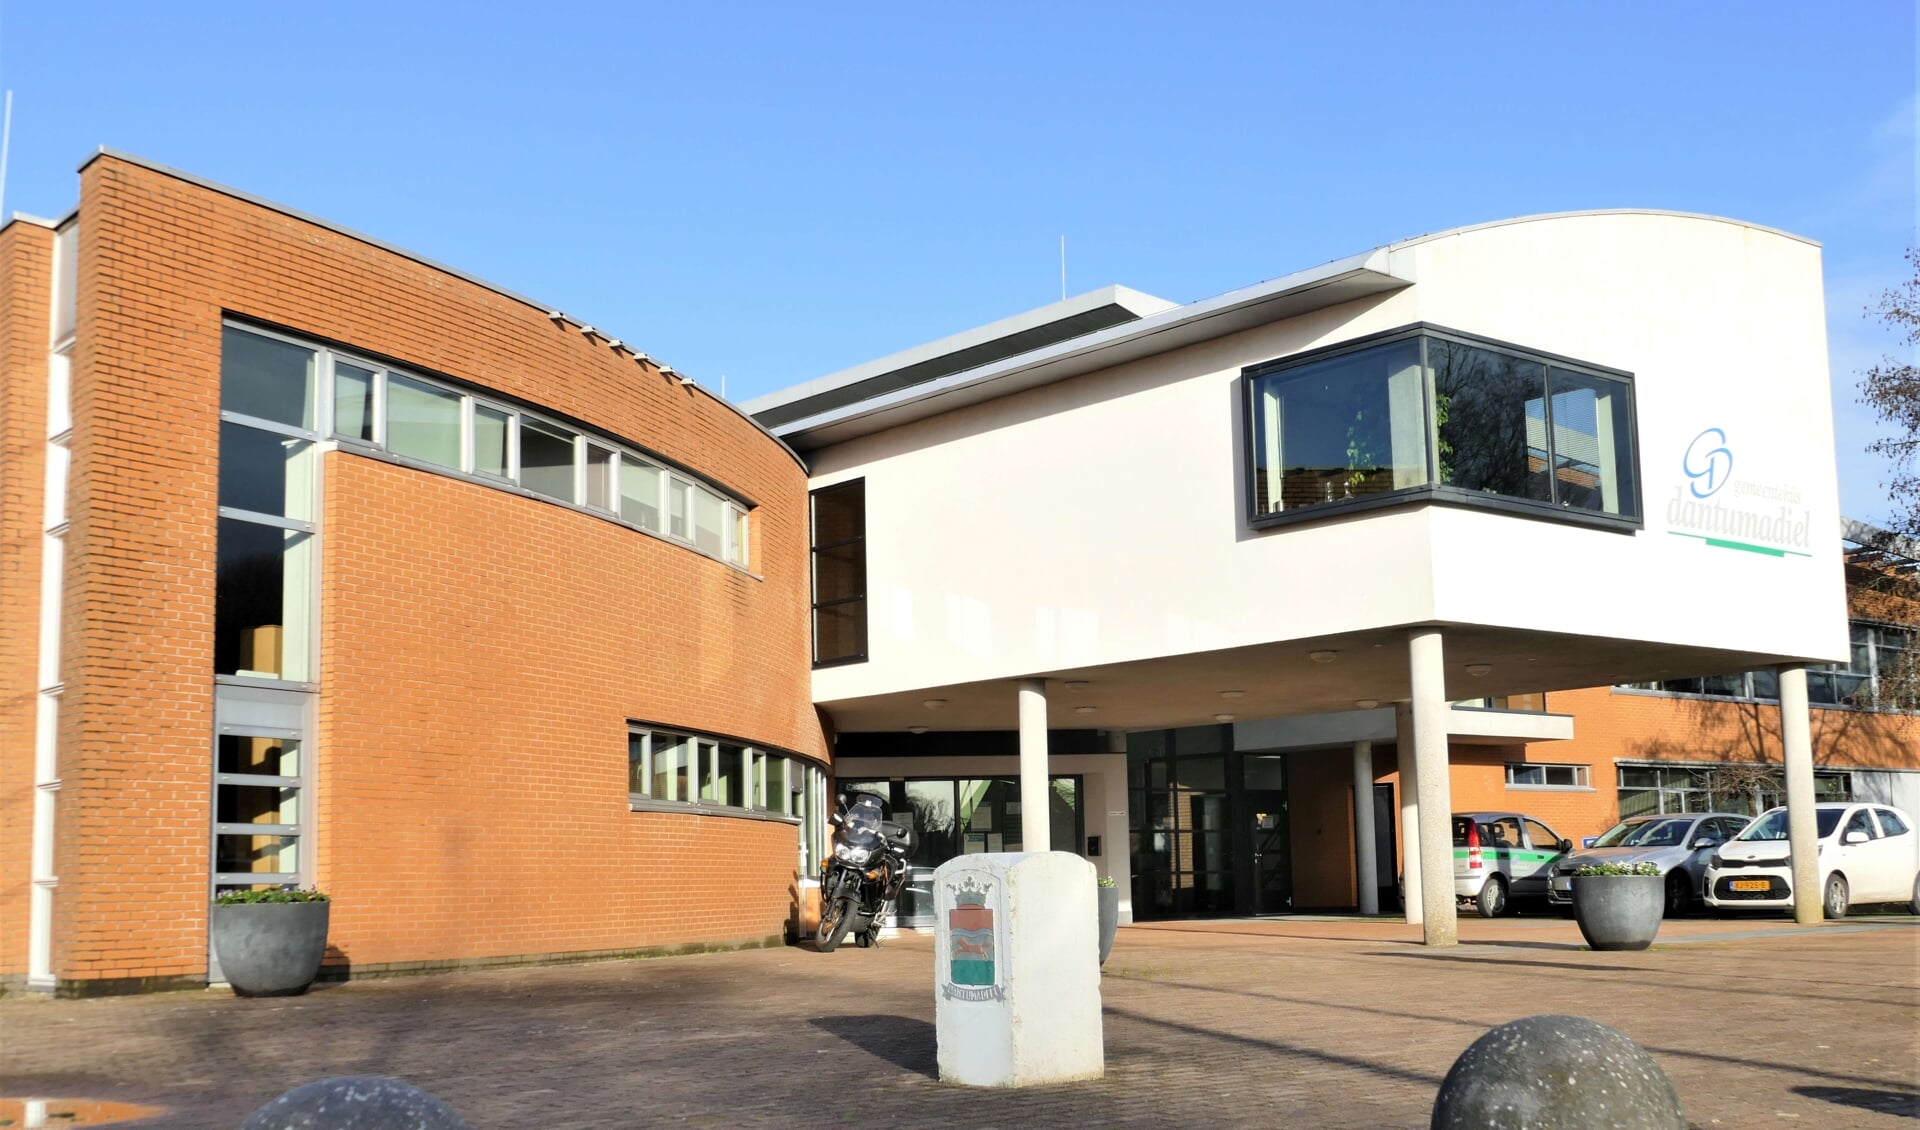 Het gemeentehuis in Damwâld, met links op de begane grond de raadszaal.Doet de gemeente er verstandig aan, het gebouw (deels?) te verkopen?Wat zijn dan de financiële gevolgen?